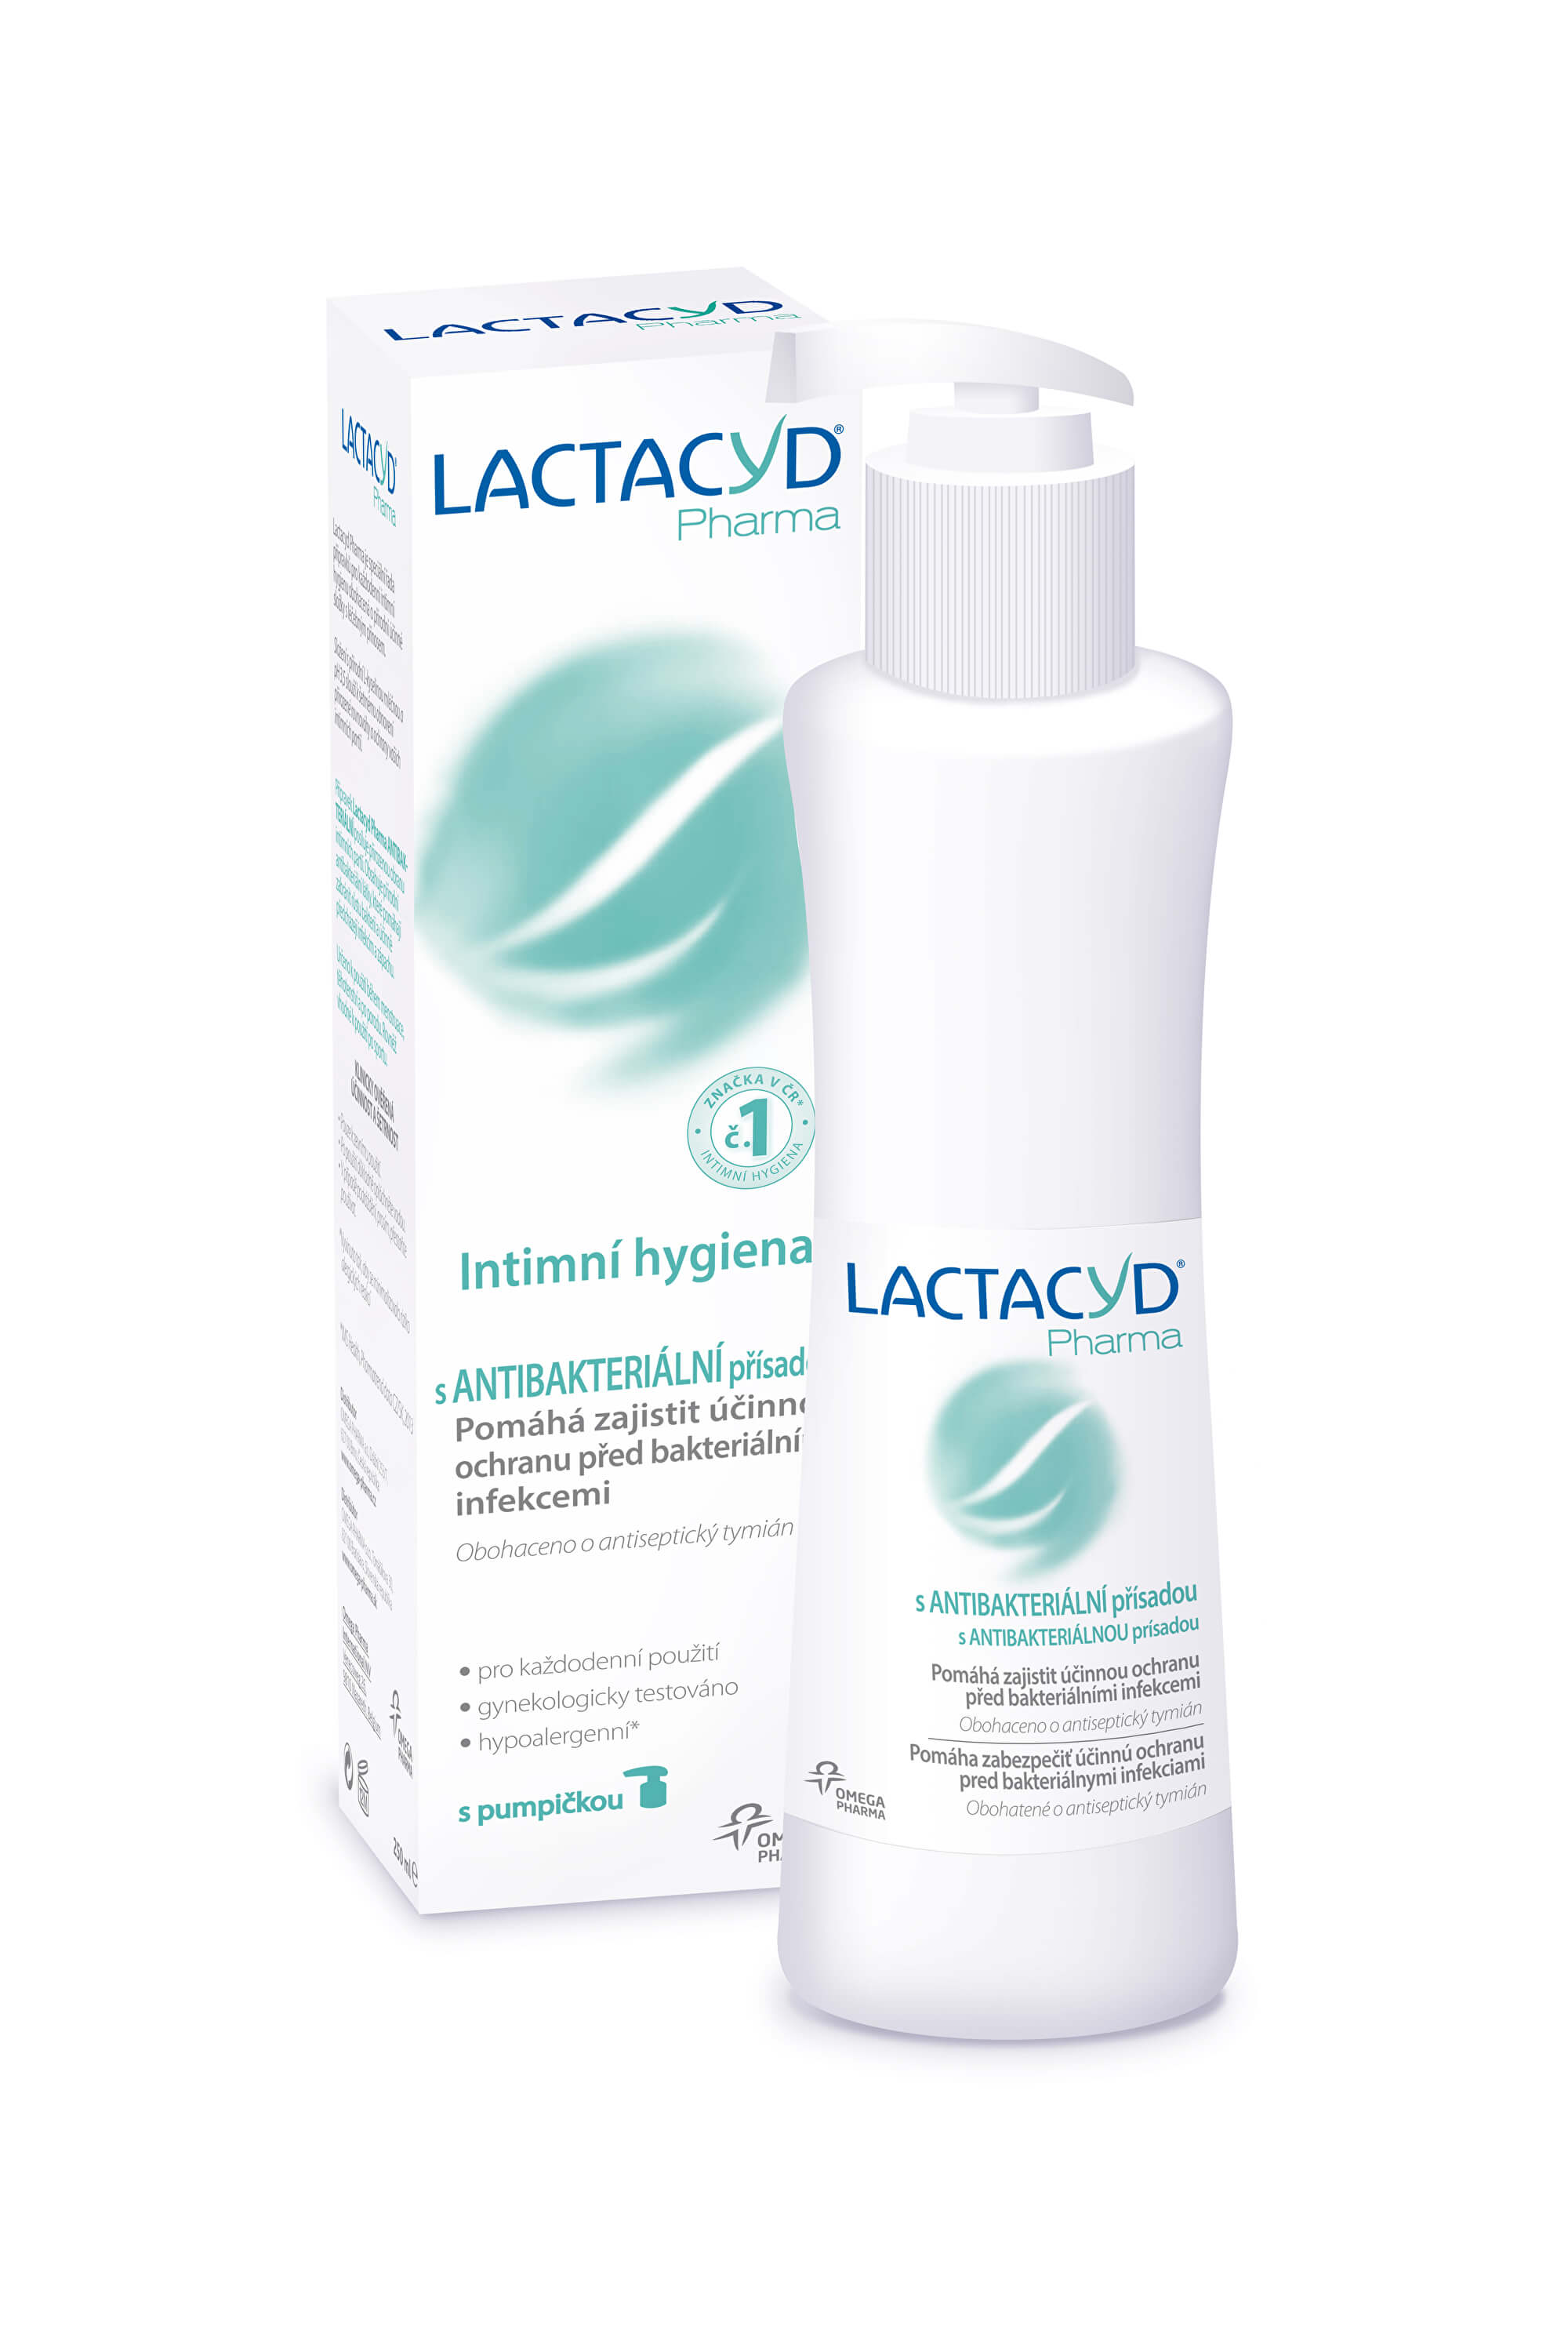 Zobrazit detail výrobku Omega Pharma Lactacyd Pharma s antibakteriální přísadou 250 ml + 2 měsíce na vrácení zboží